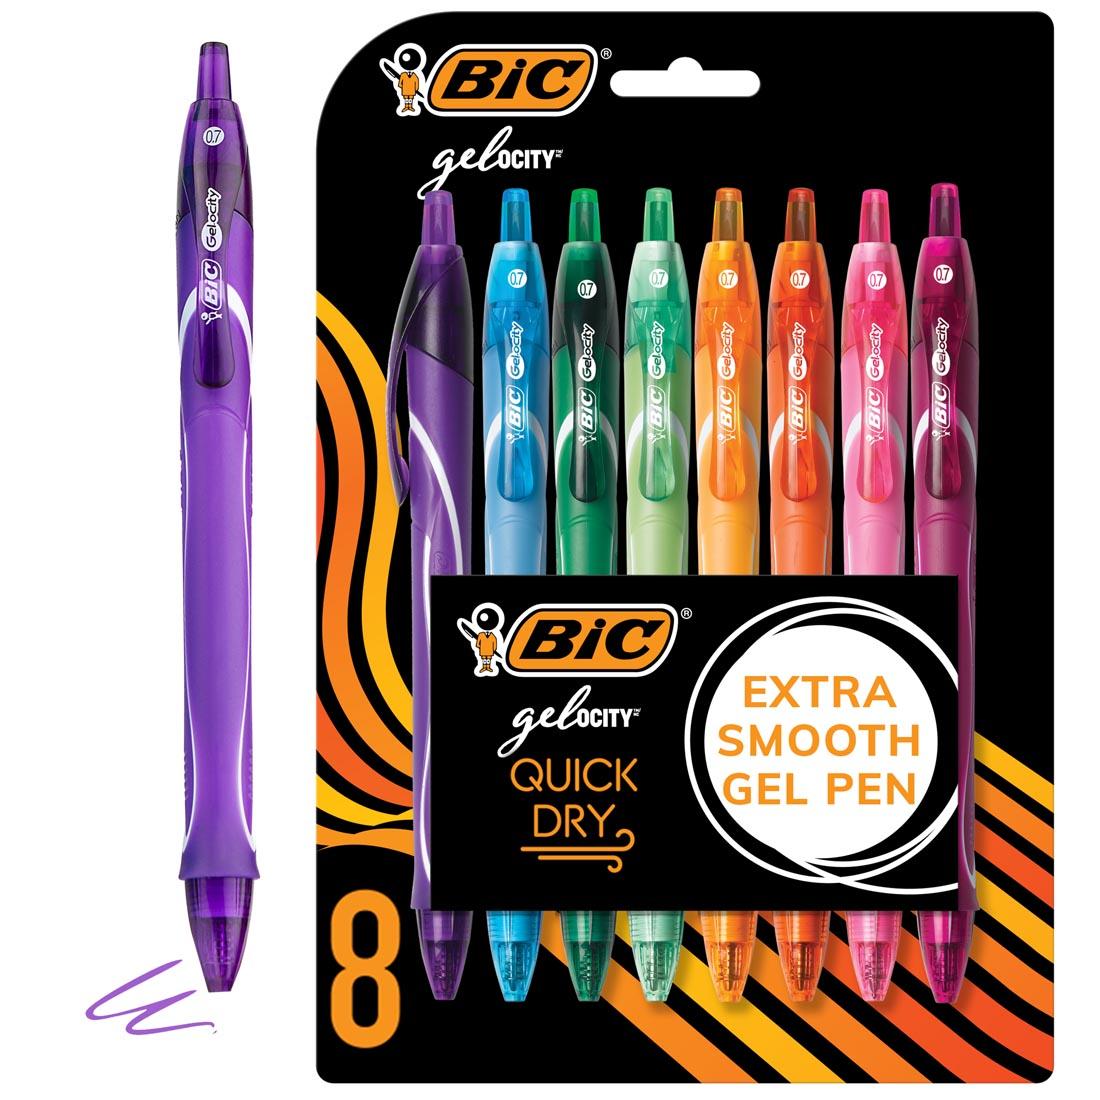 Bic Gel-Ocity Assorted Gel Pens 8-Count Set